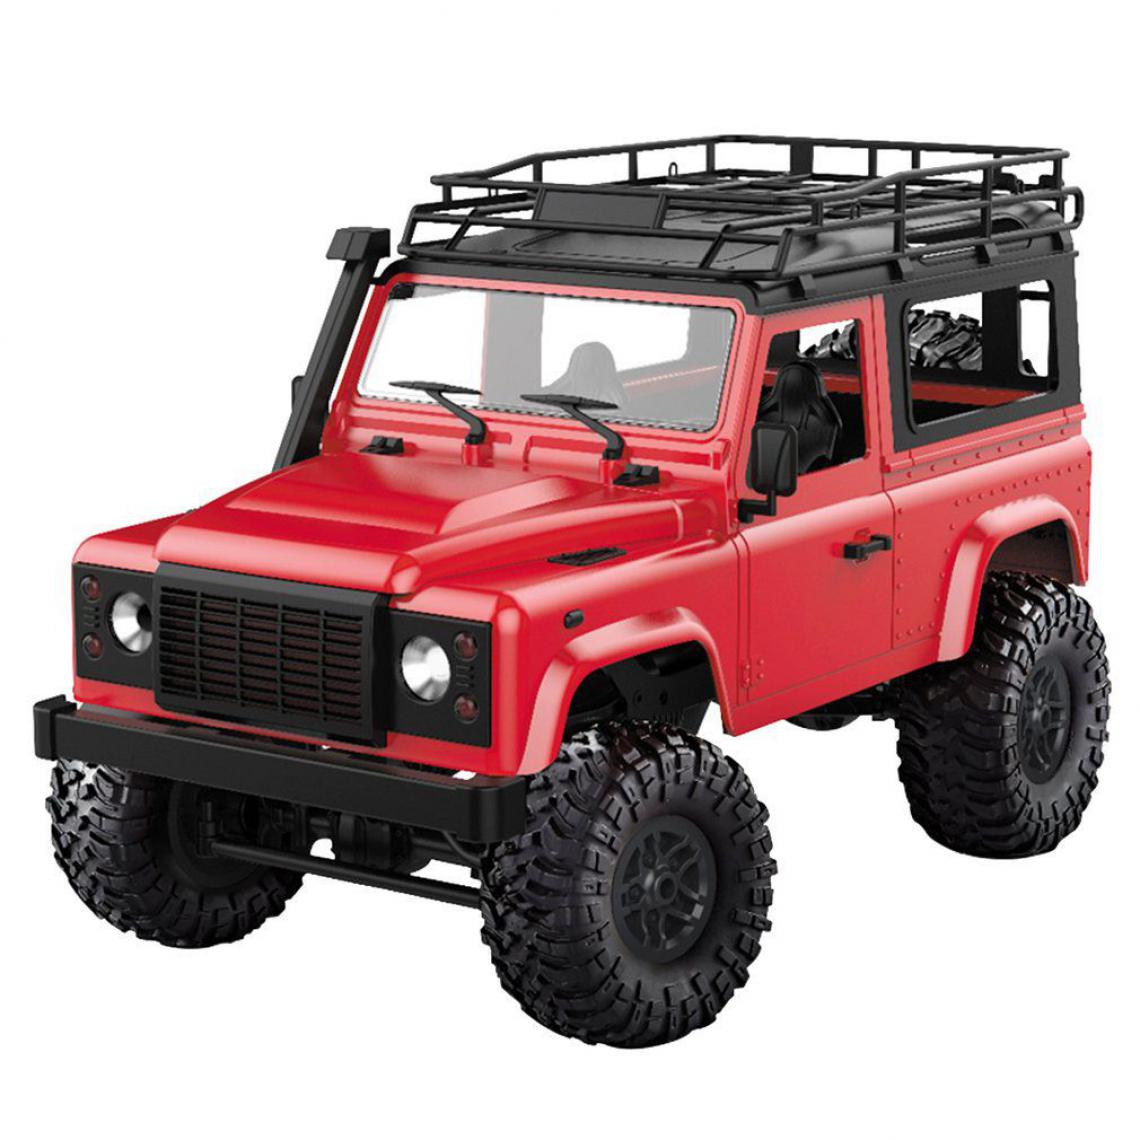 Generic - Voiture télécommandée Wltoys , échelle 1:12  , 4x4WD Tout-terrain avec moteur et 1 batterie , 35 *16.5* 20.5  cm - Rouge  - Véhicule électrique pour enfant